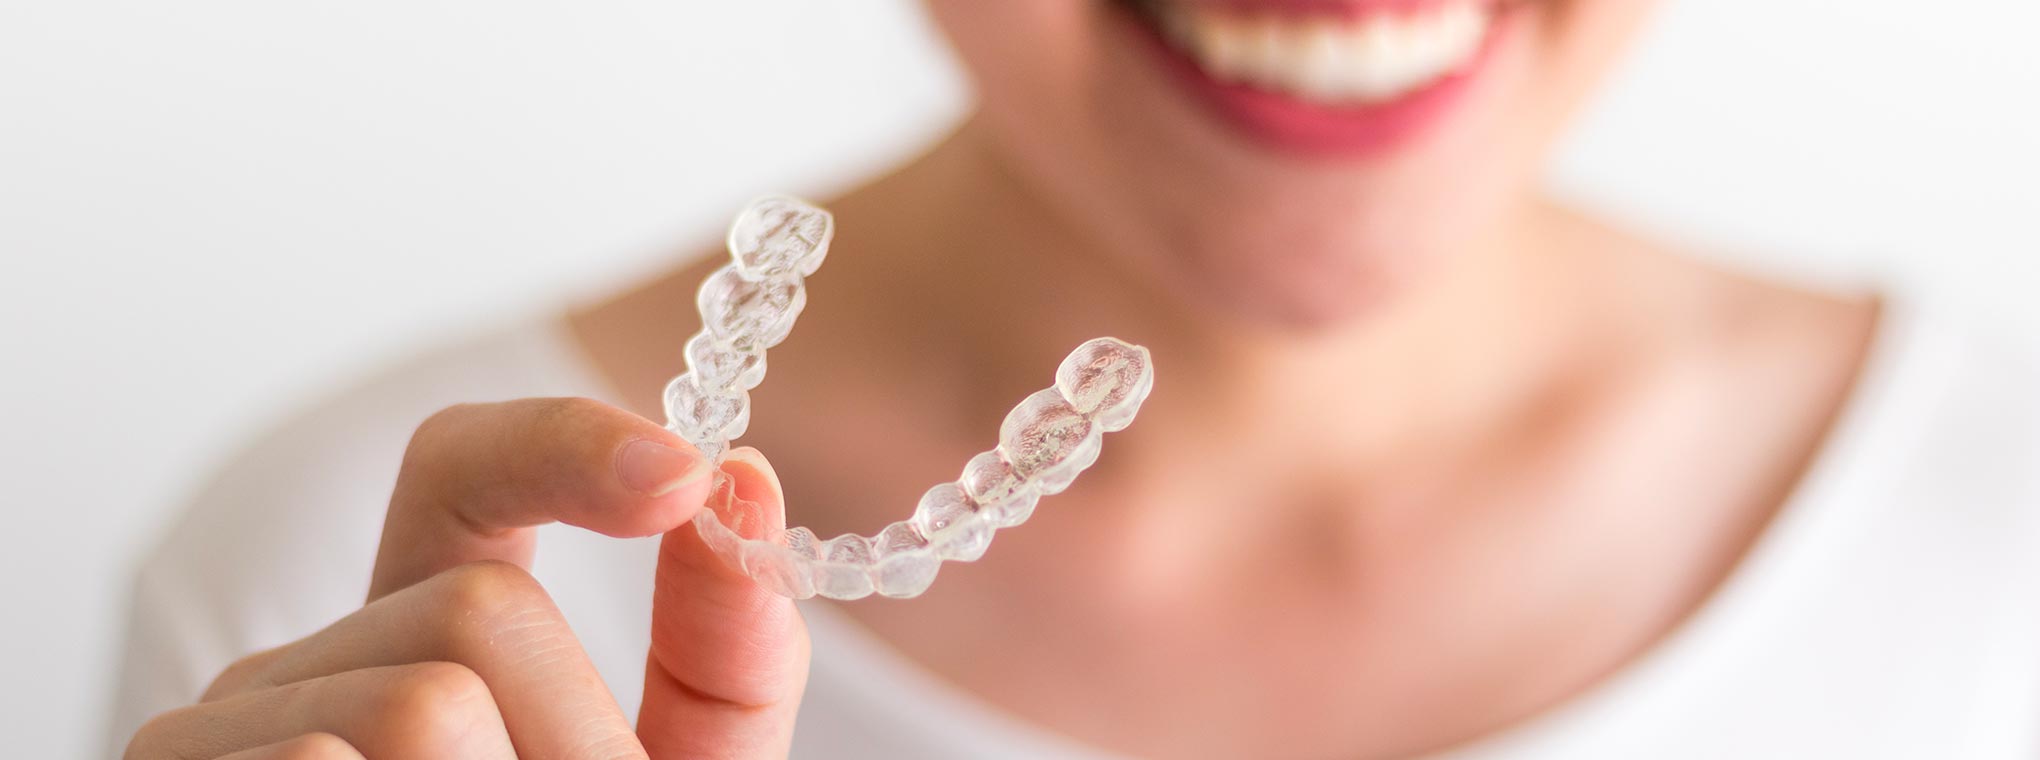 Garda Odontoiatria | Ortodonzia Invisibile